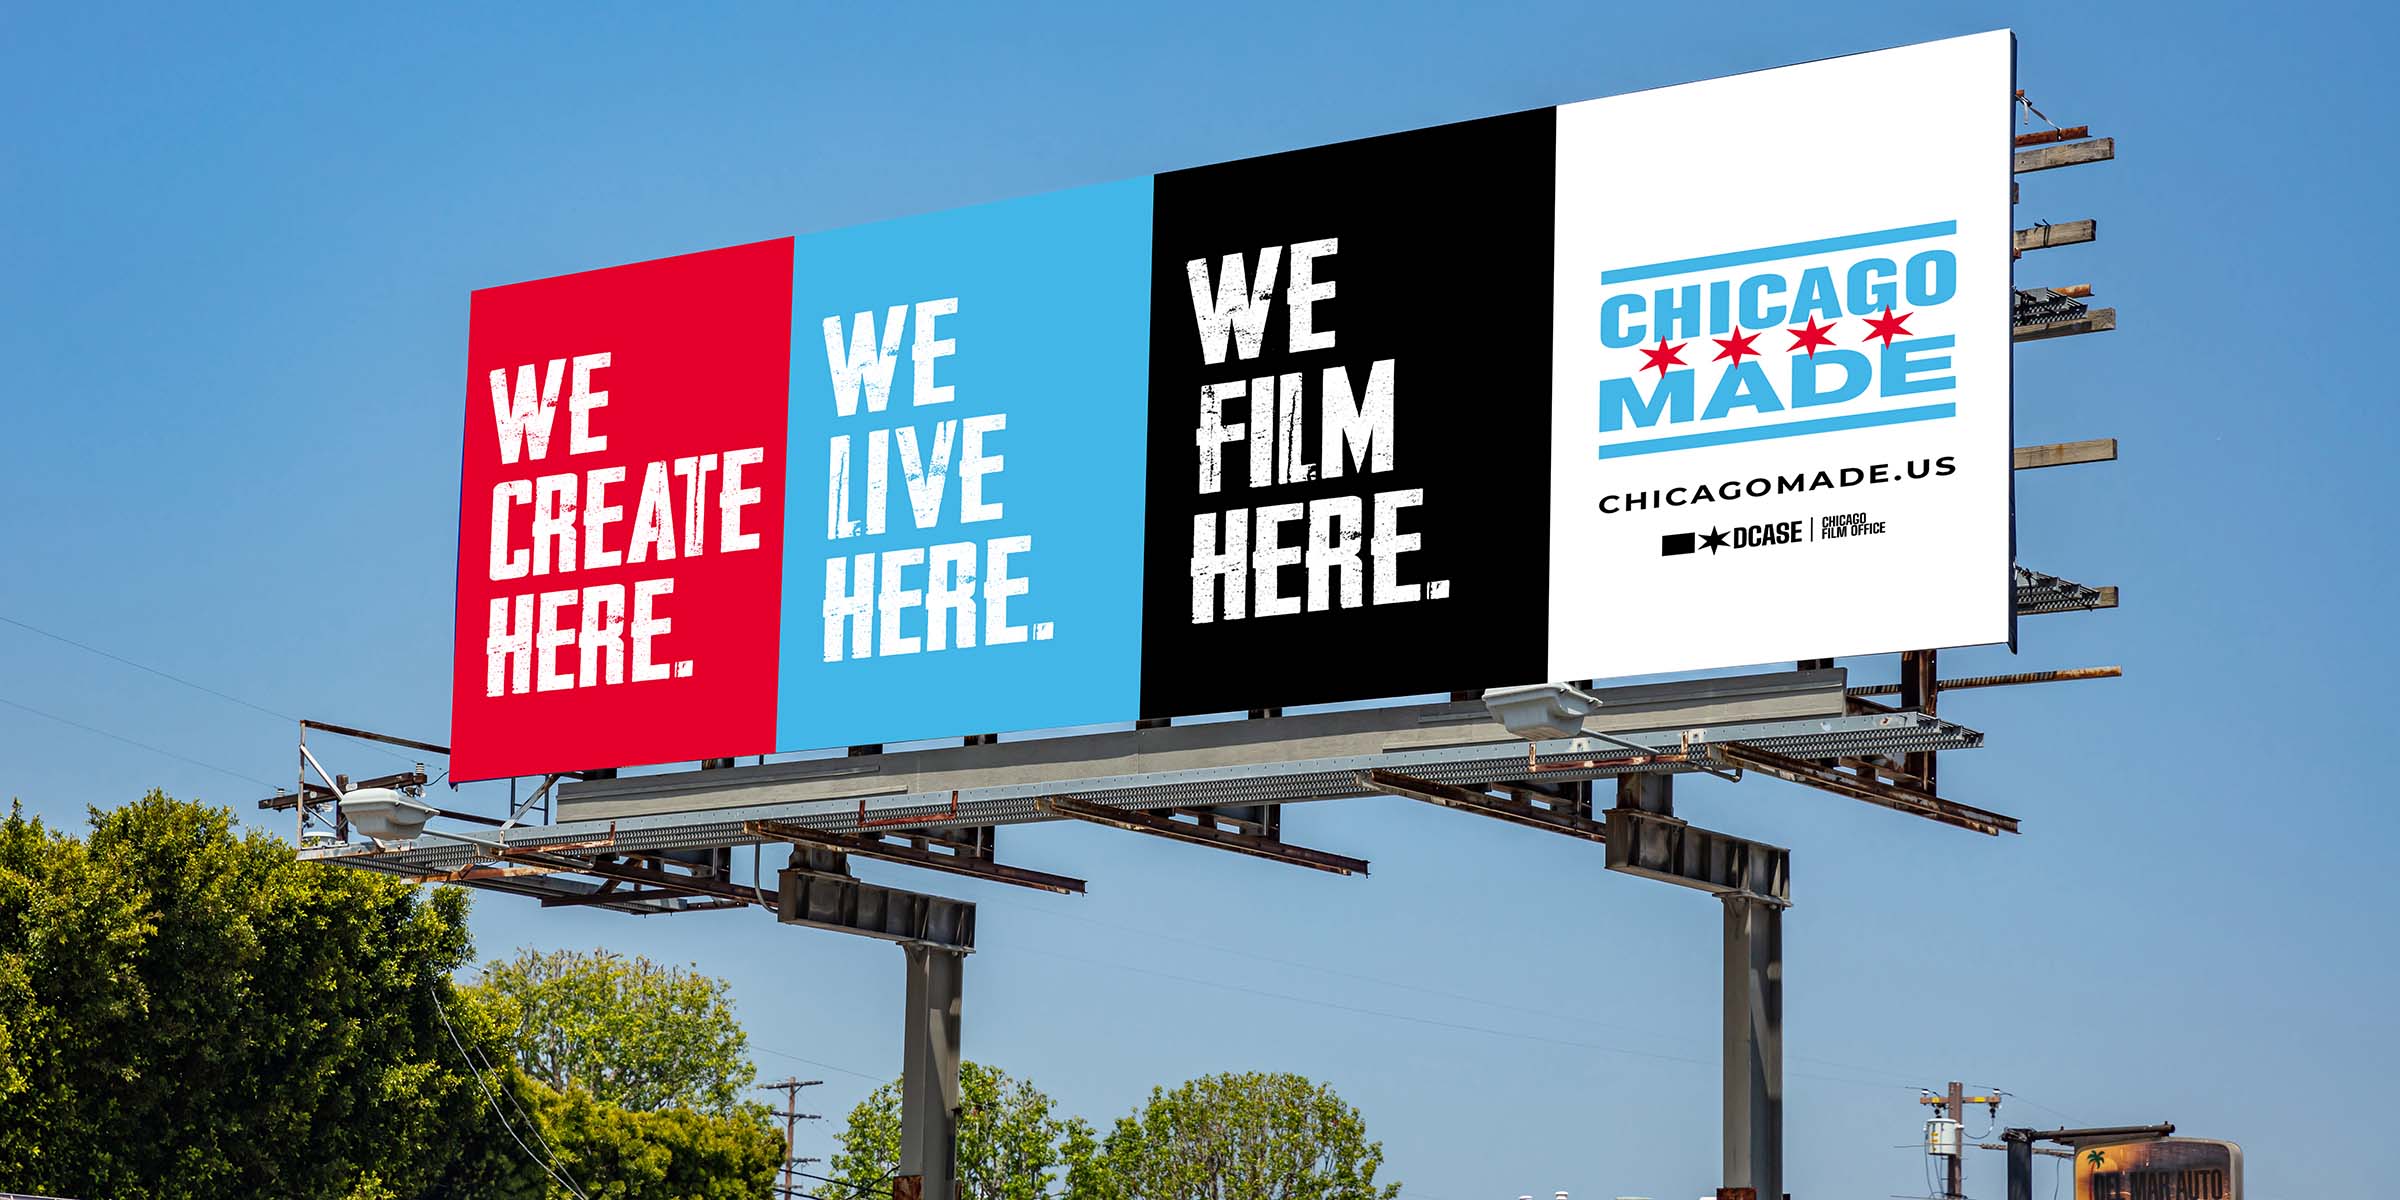 DCASE Chicago Made Billboard Mockup